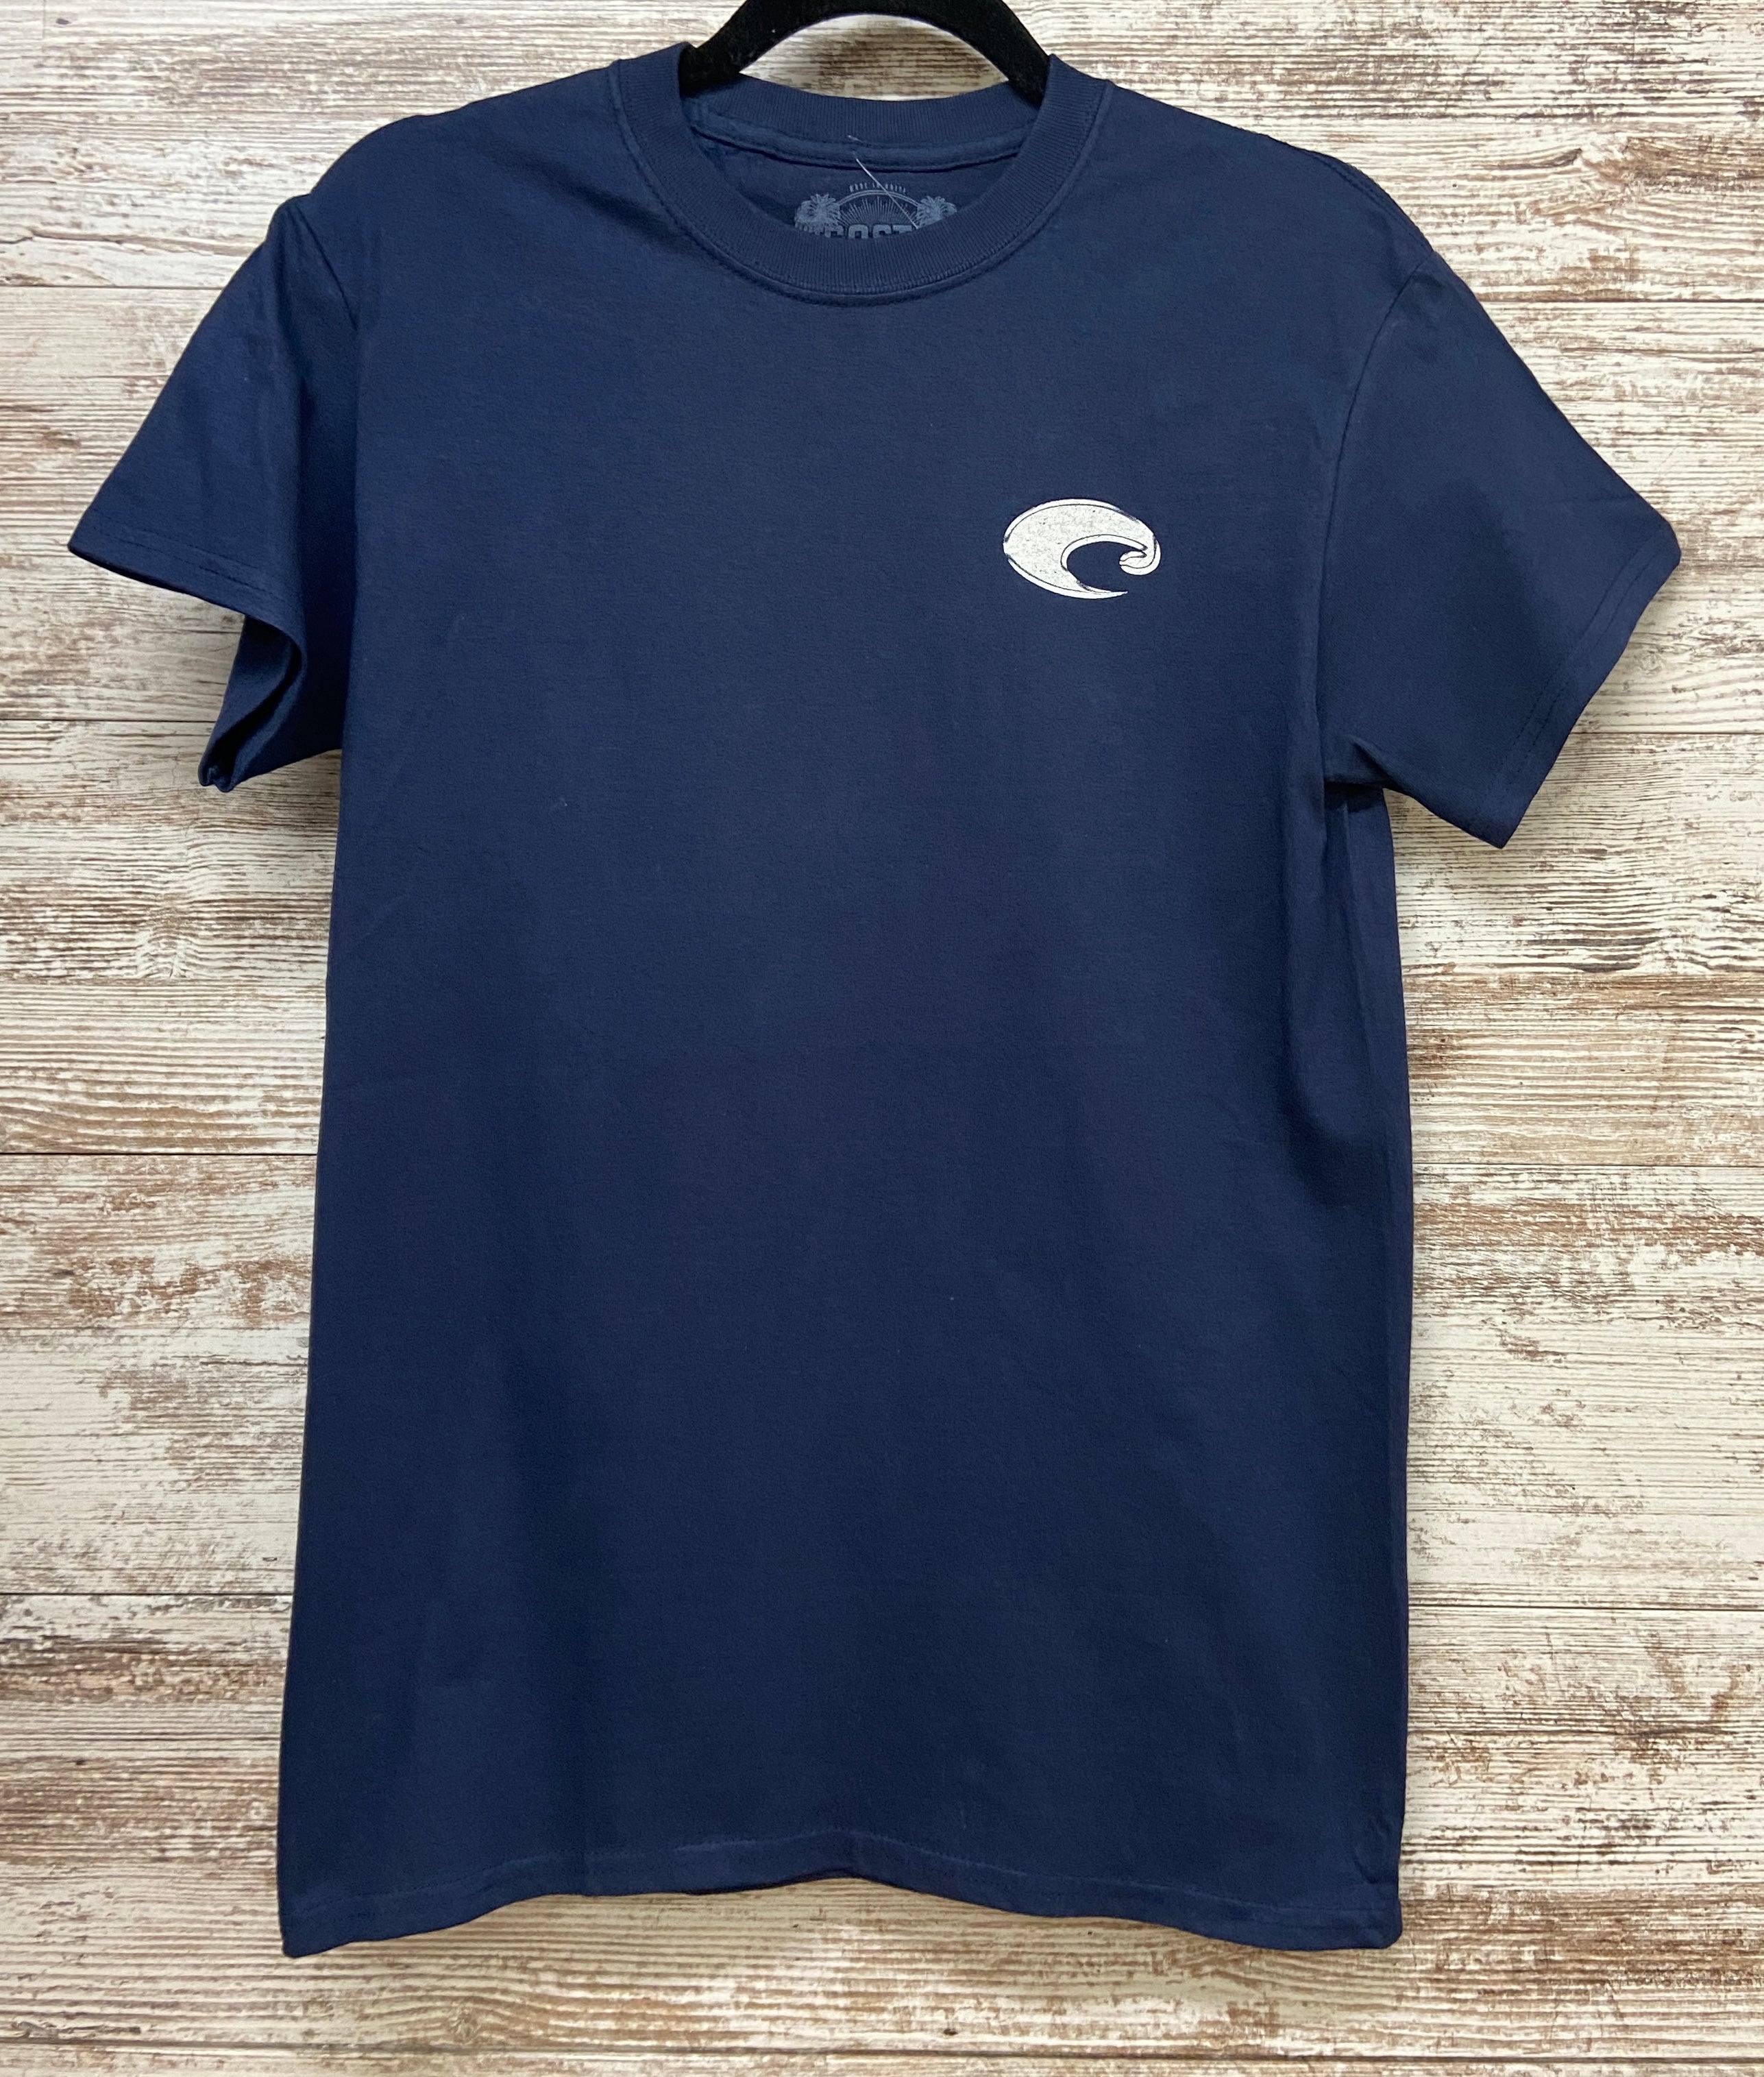 Hook & Tackle Men's Coastline SS Shirt - Large - French Blue